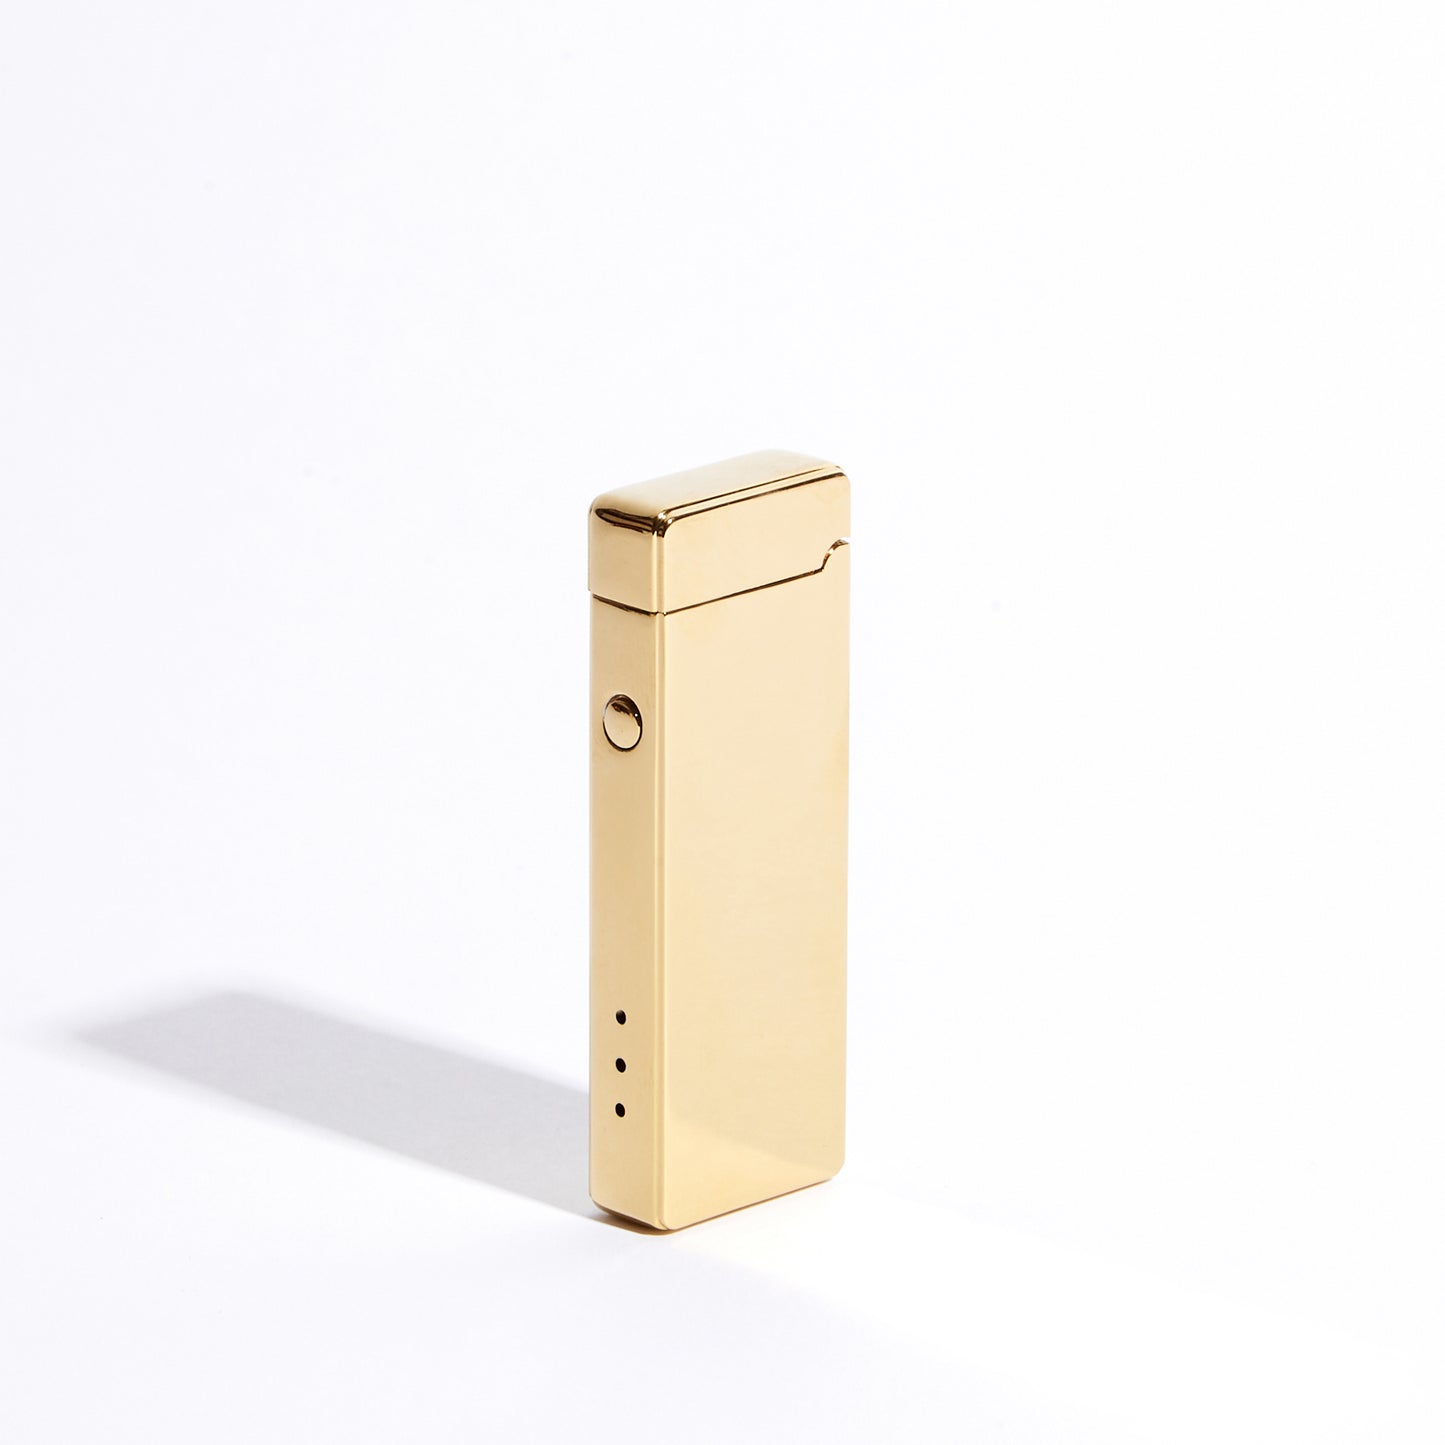 Pocket Electric Arc Lighter - Gold